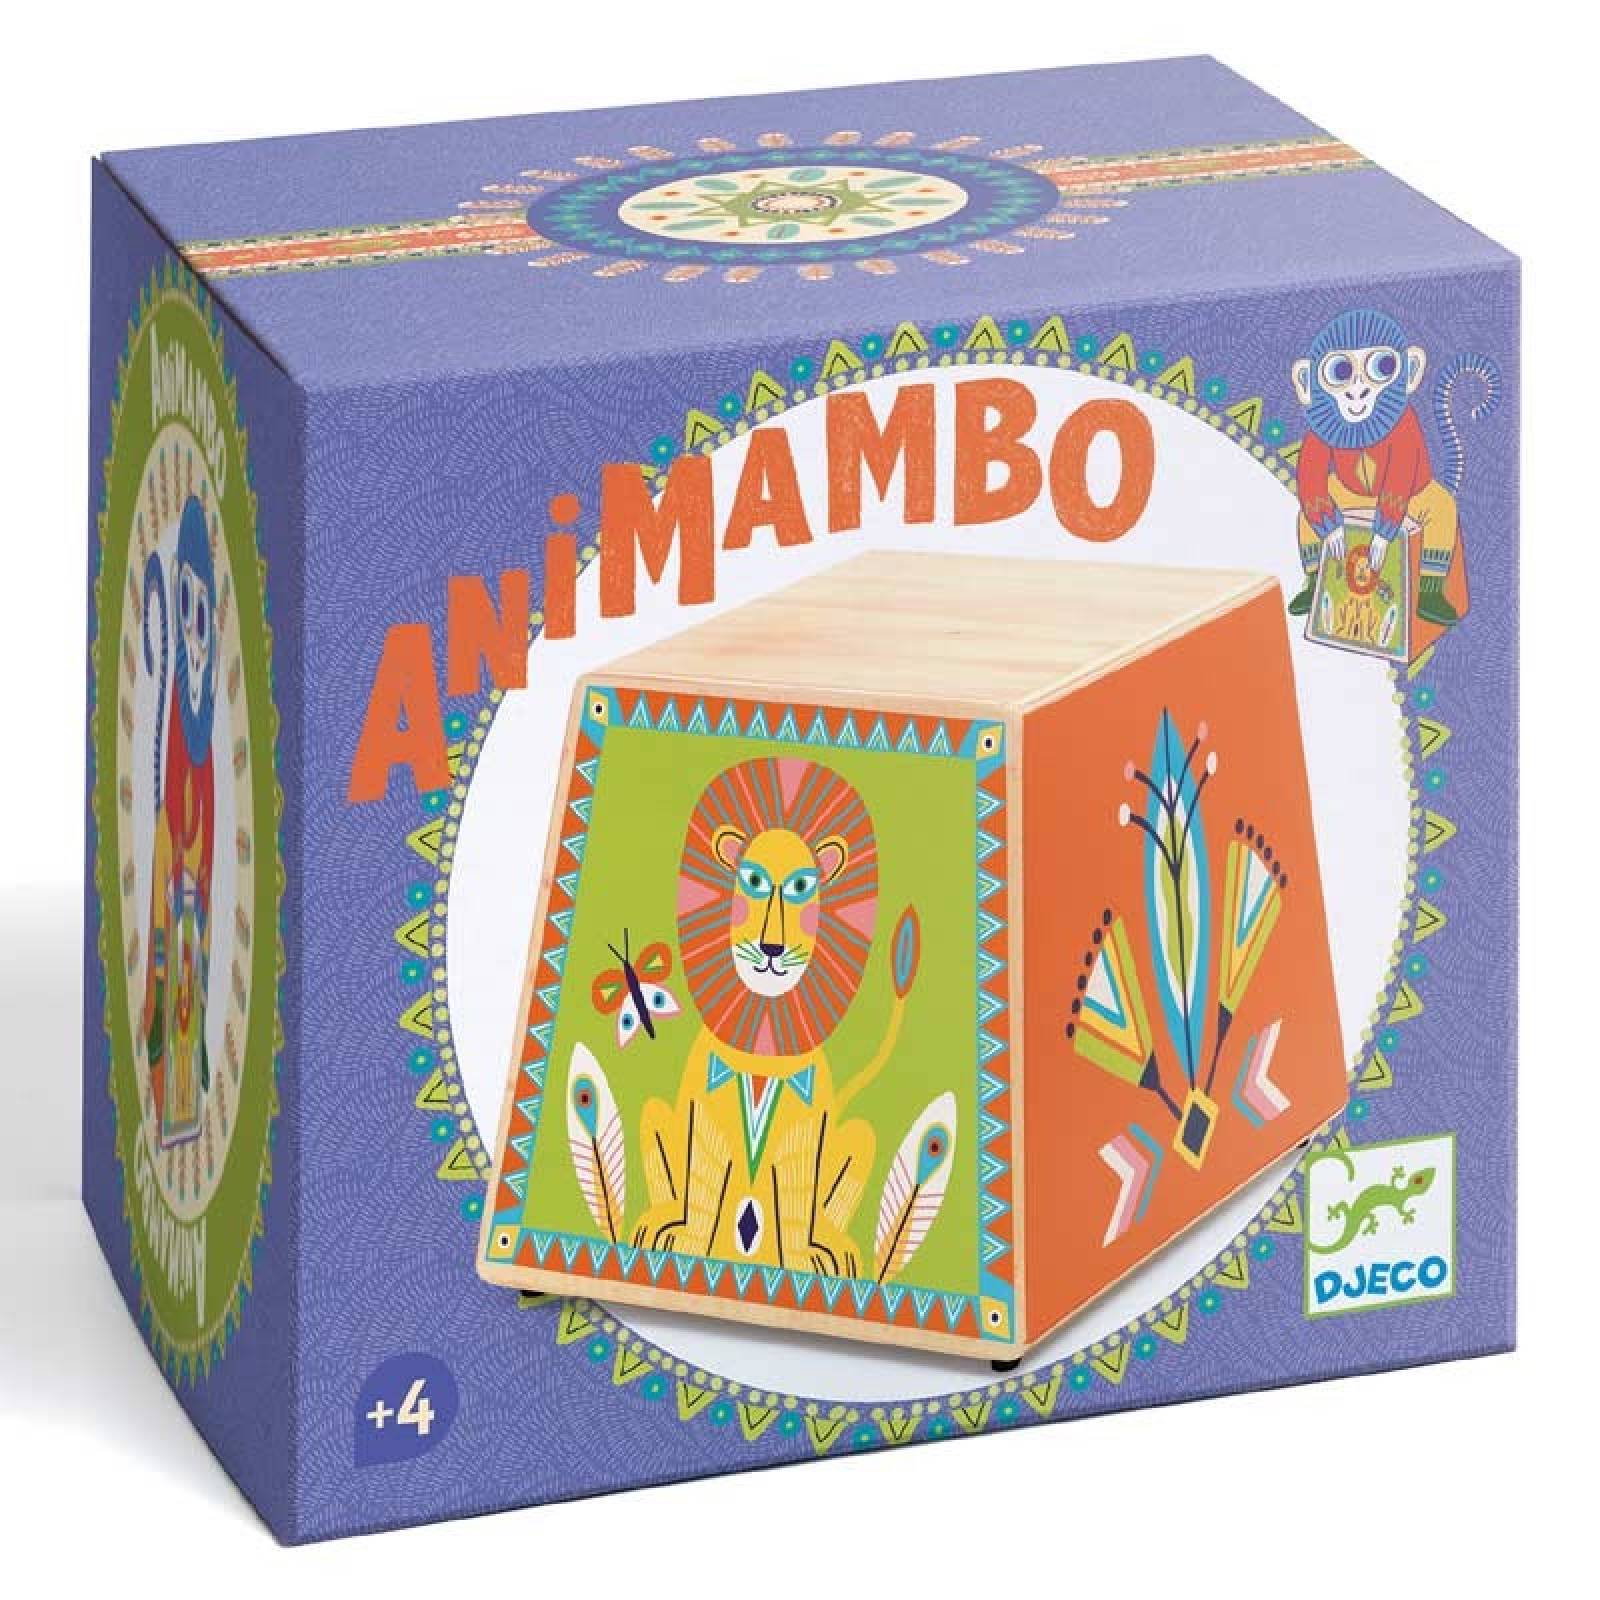 Animambo Cajon Box Drum By Djeco 4+ thumbnails